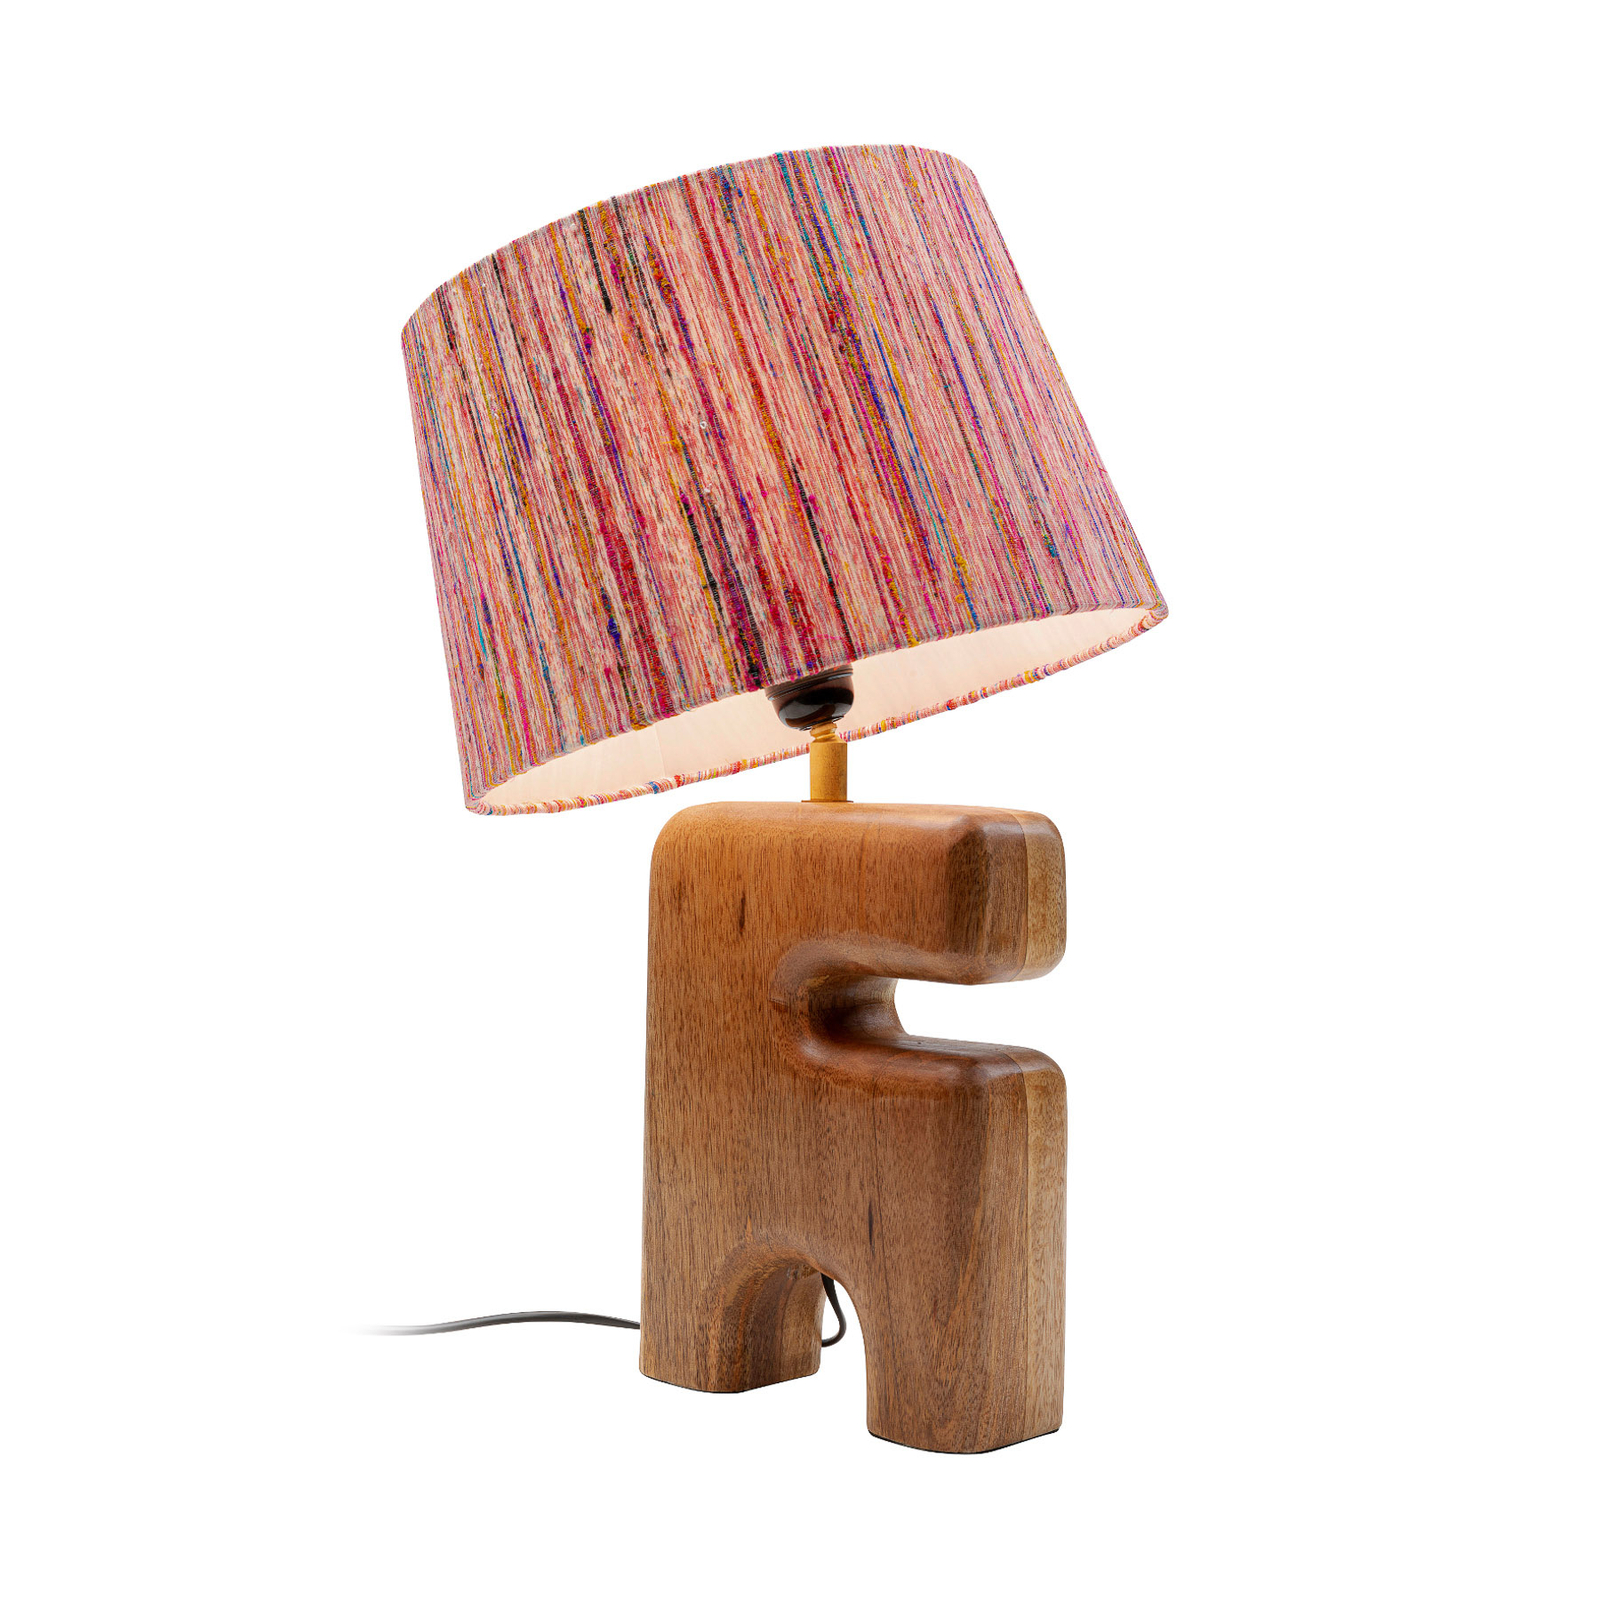 KARE Mesa table lamp wood base colourful lampshade